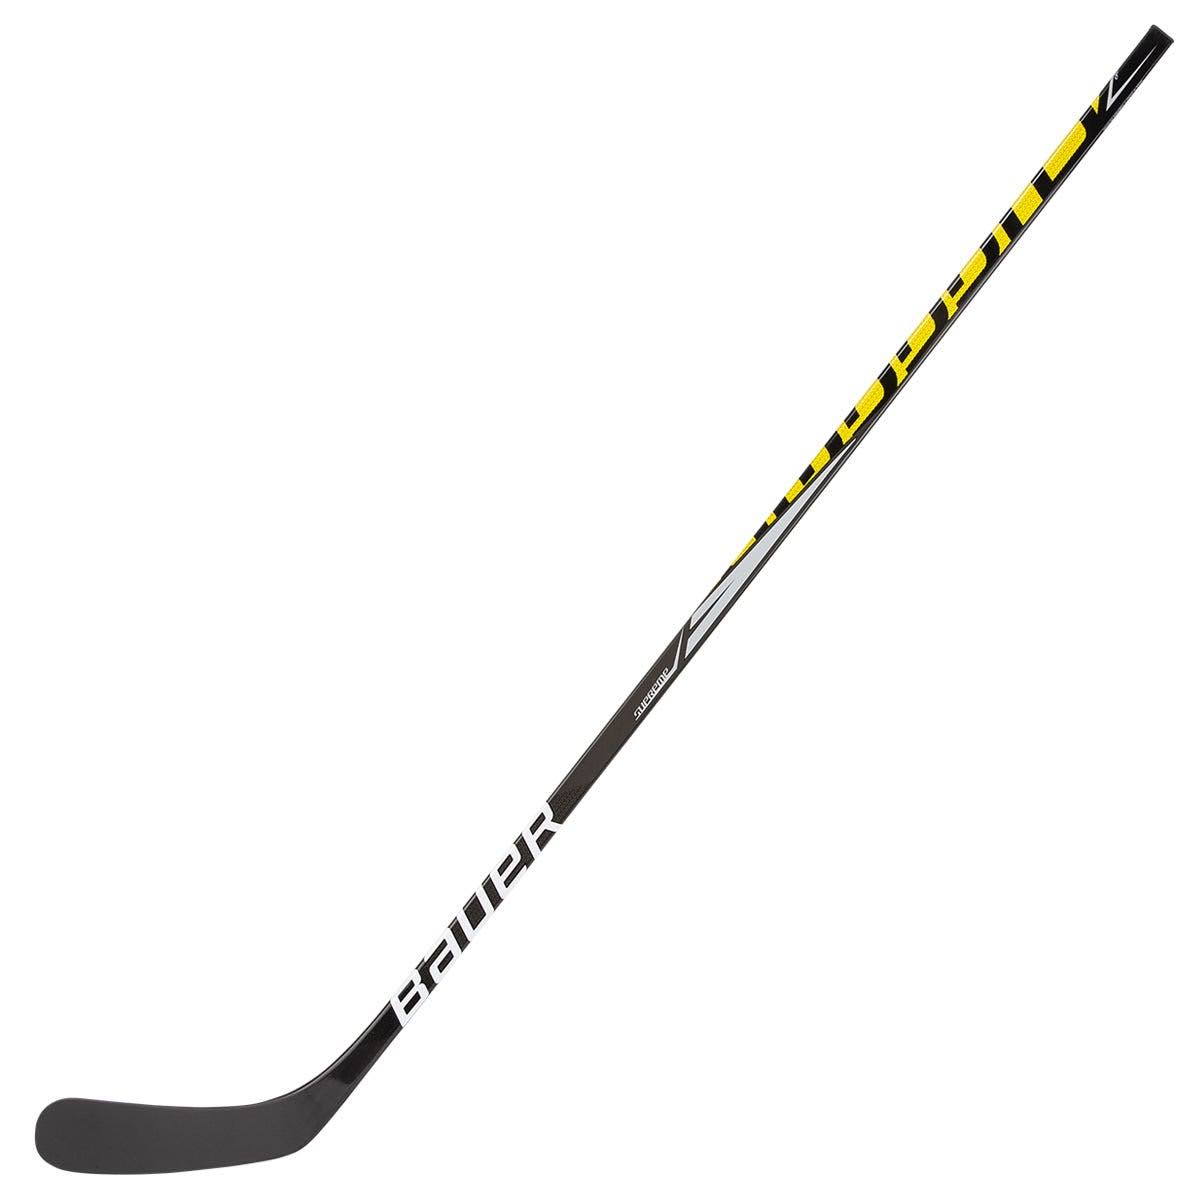 Bauer Supreme S37 Grip Senior Hockey Stick